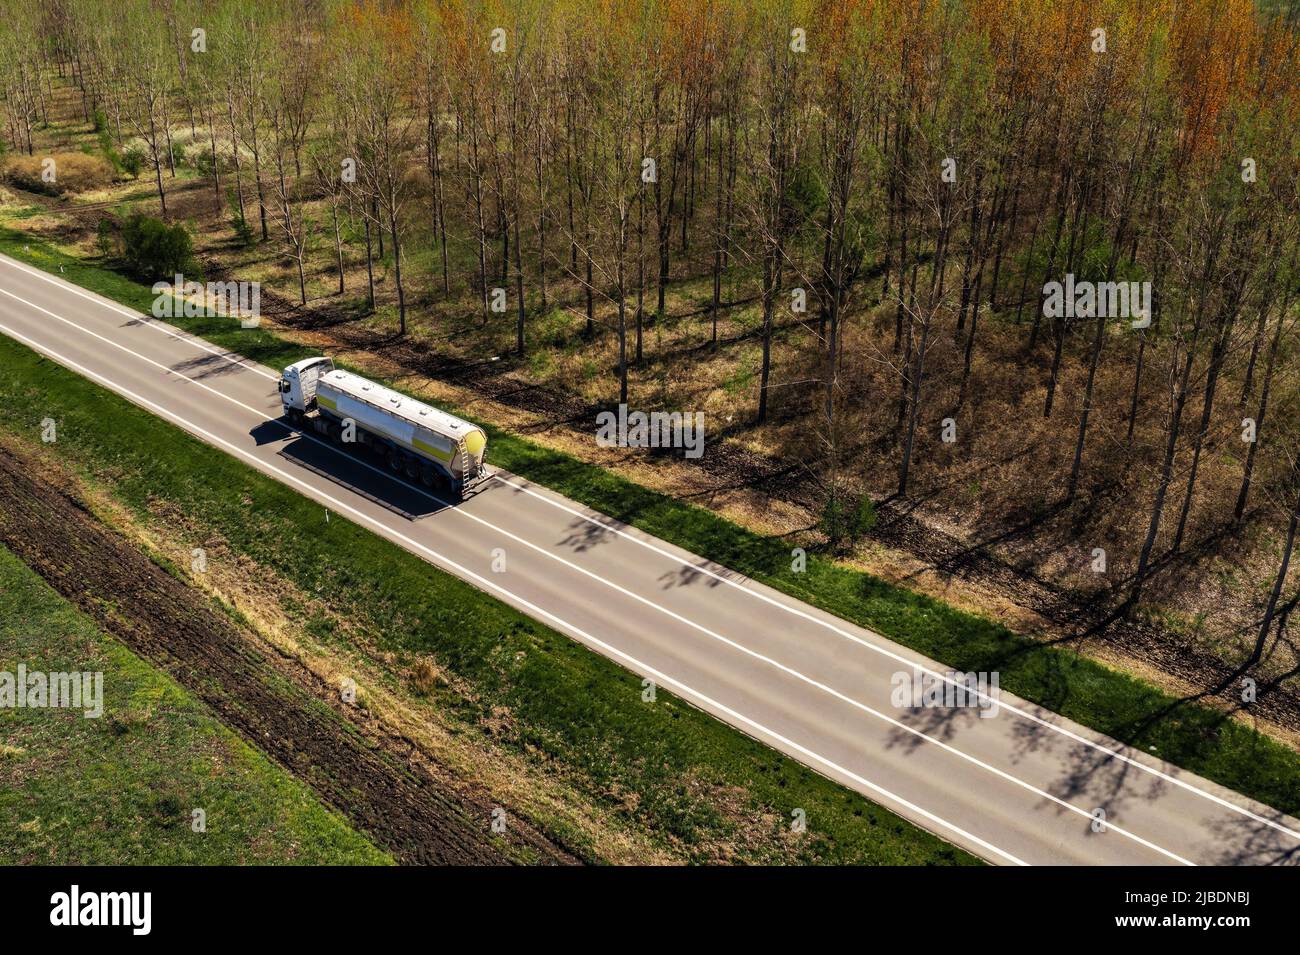 Photographie aérienne d'un camion citerne sur la route, concept de l'industrie du transport Banque D'Images